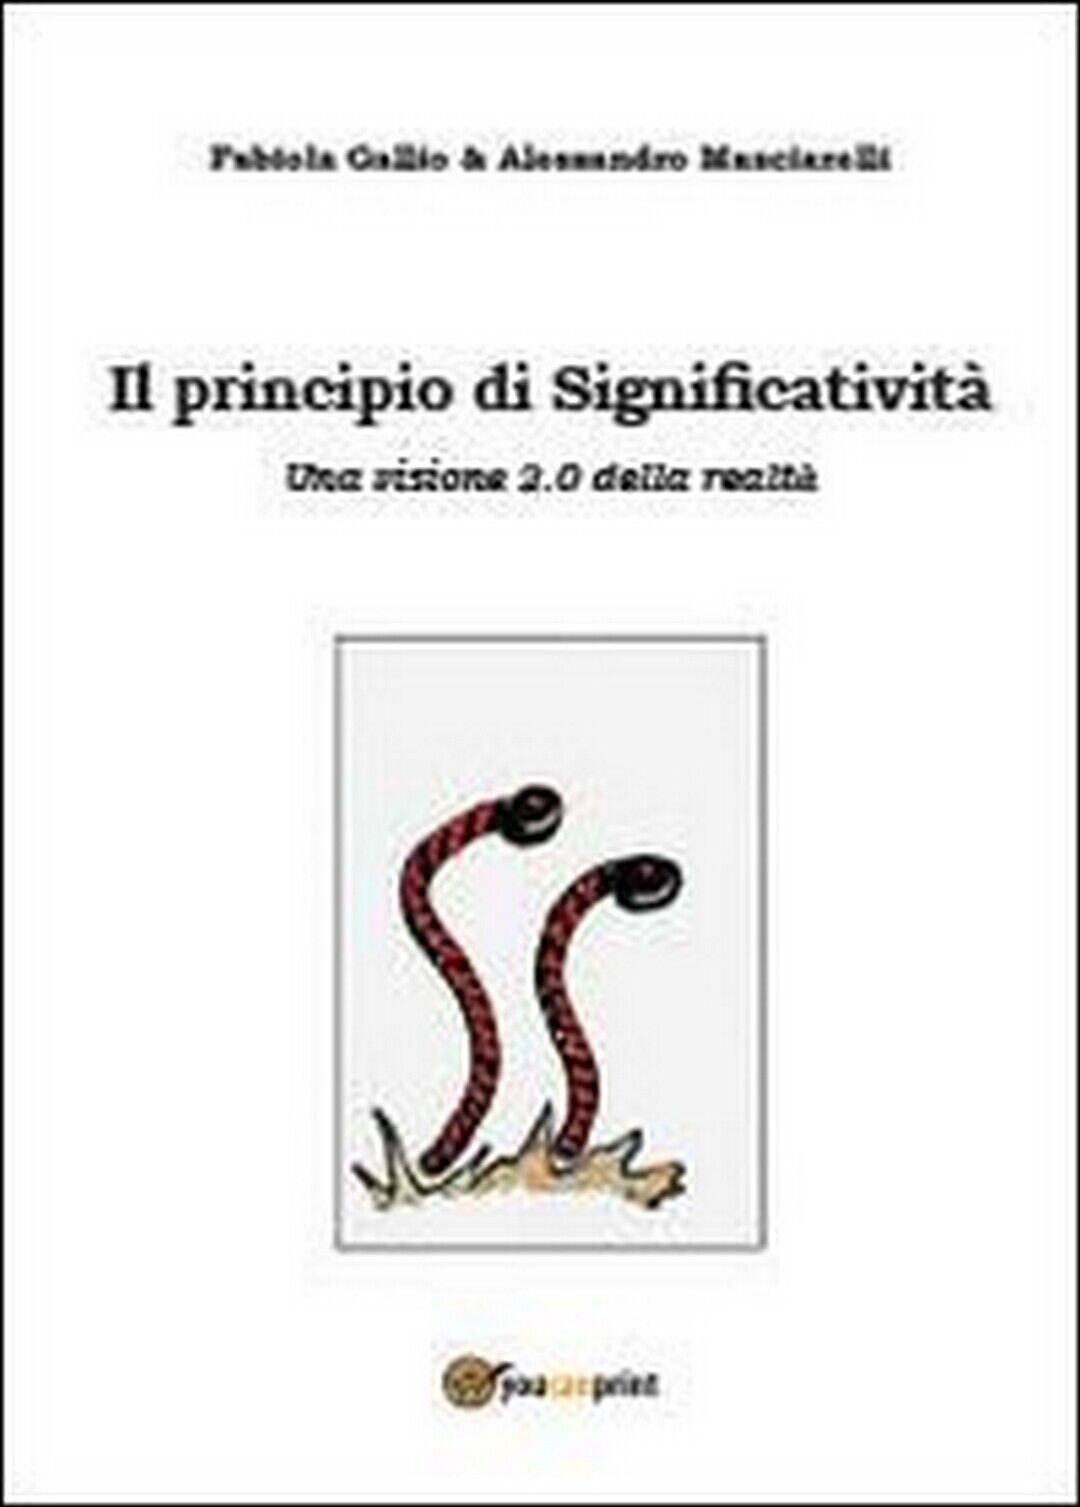 Il principio di significativit?, Fabiola Gallio, Alessandro Masciarelli (2013) libro usato